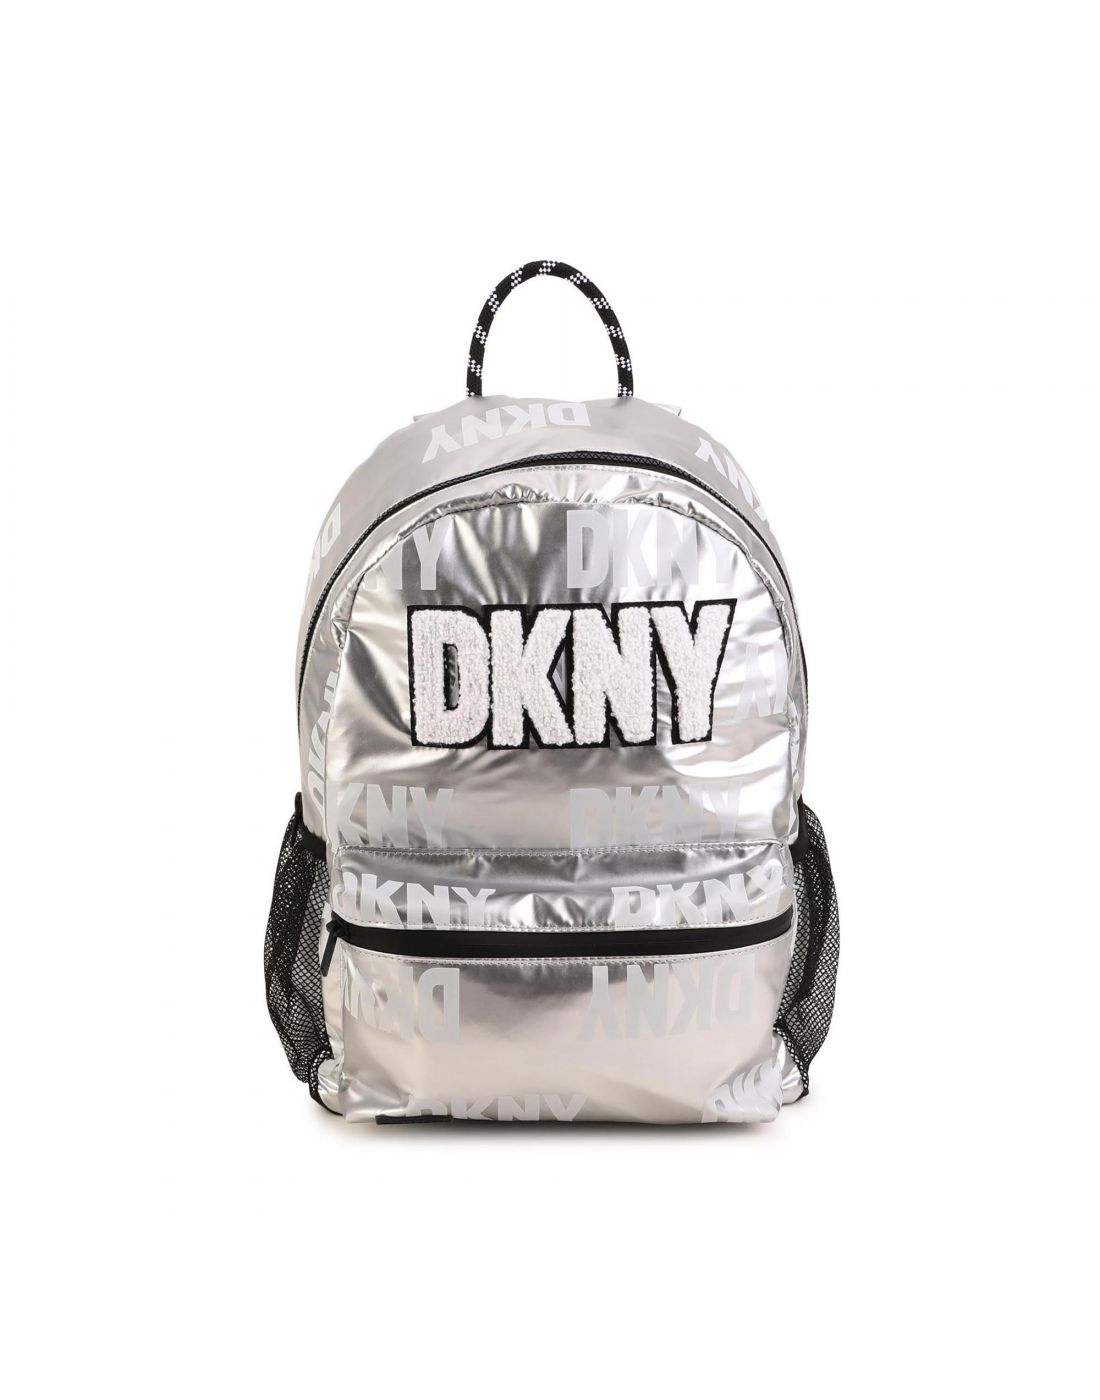 Παιδική Τσάντα Πλάτης D.K.N.Y, DKNY, 23261049 | LapinKids.com | LAPIN KIDS